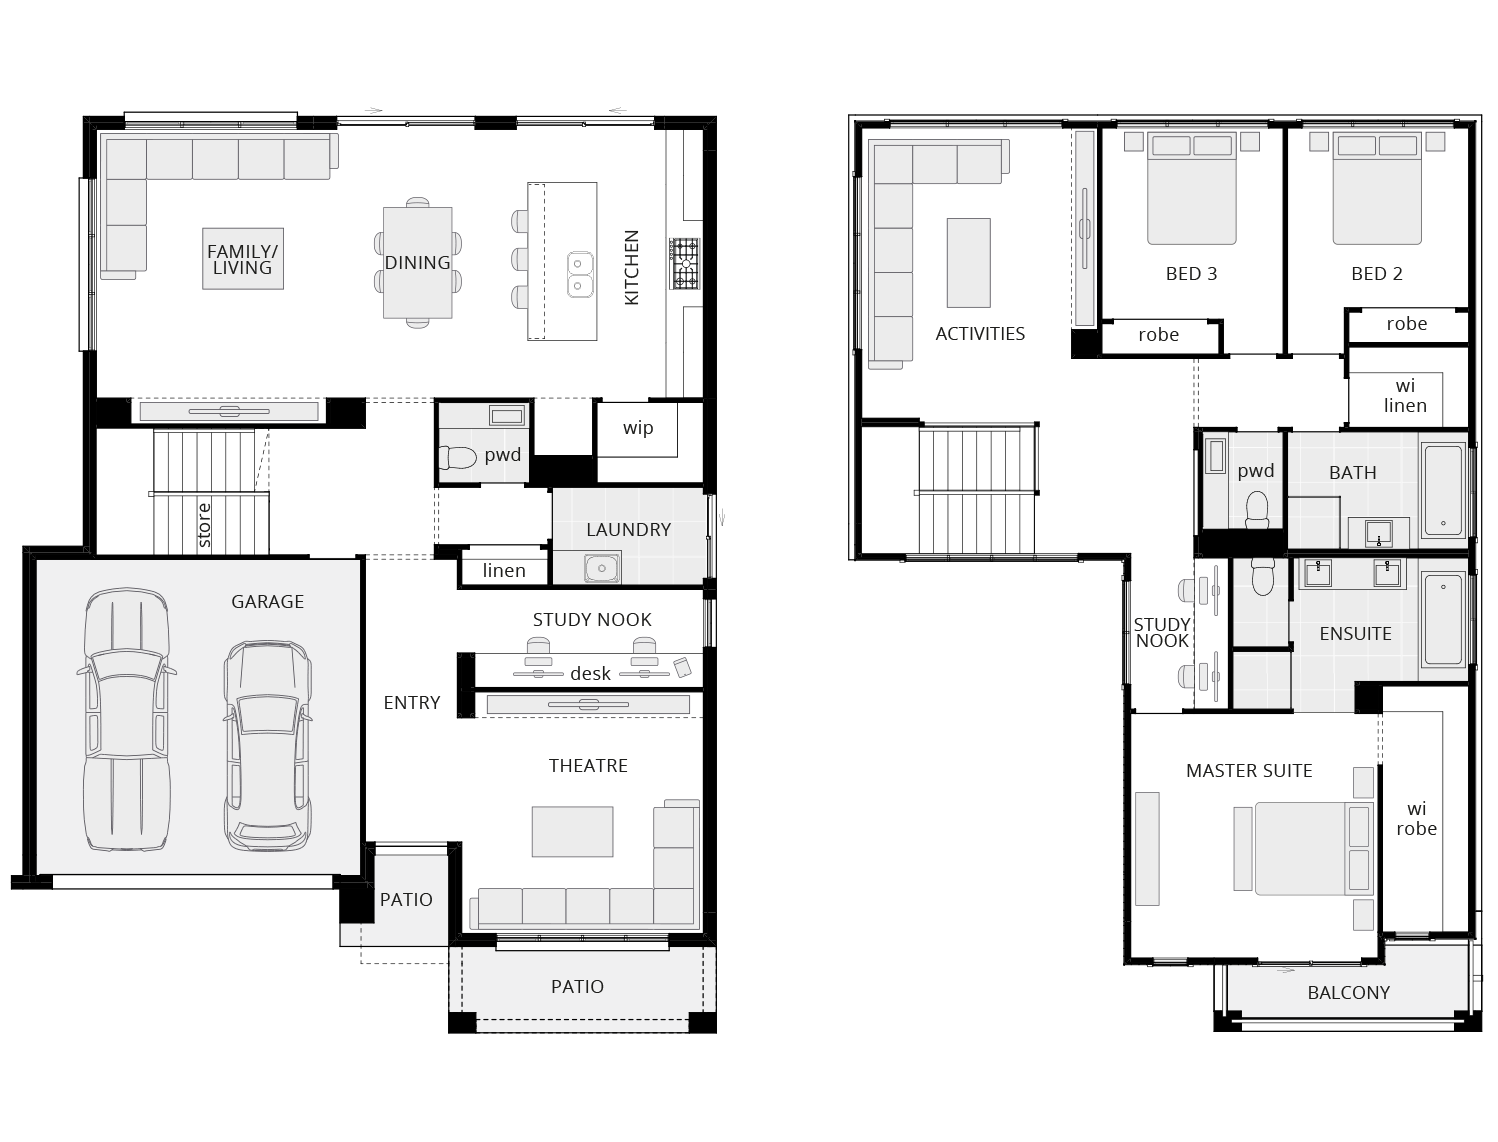 scarborough-double-storey-home-design-floor-plan-standard-armstrong-facade-lhs